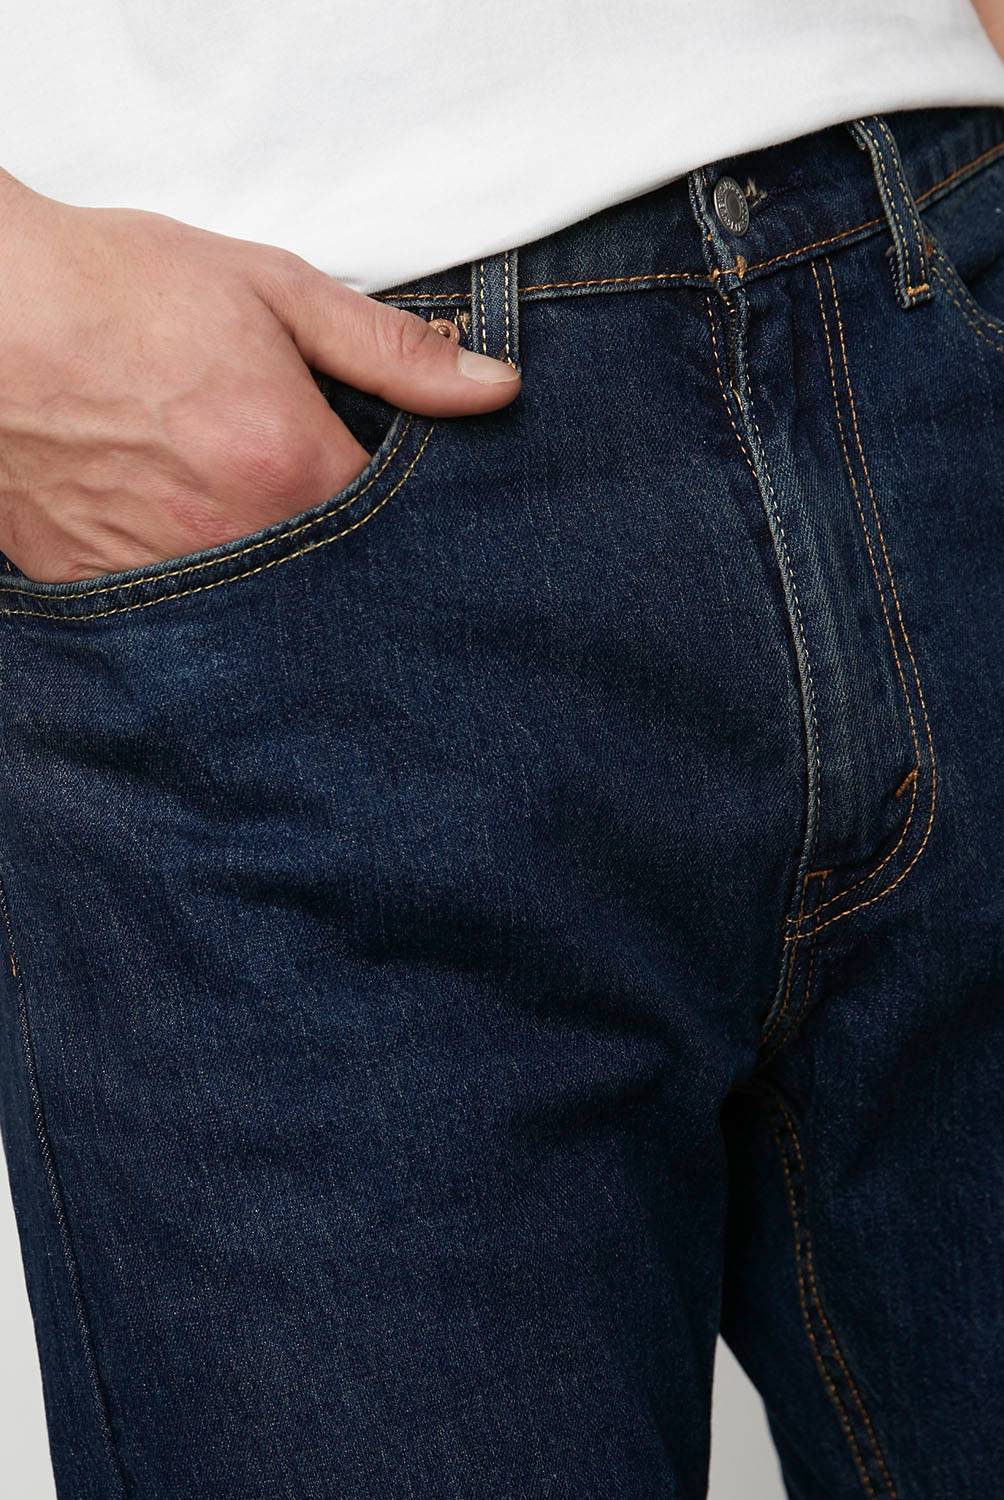 LEVIS - Levis Jeans Regular Fit Algodón Hombre